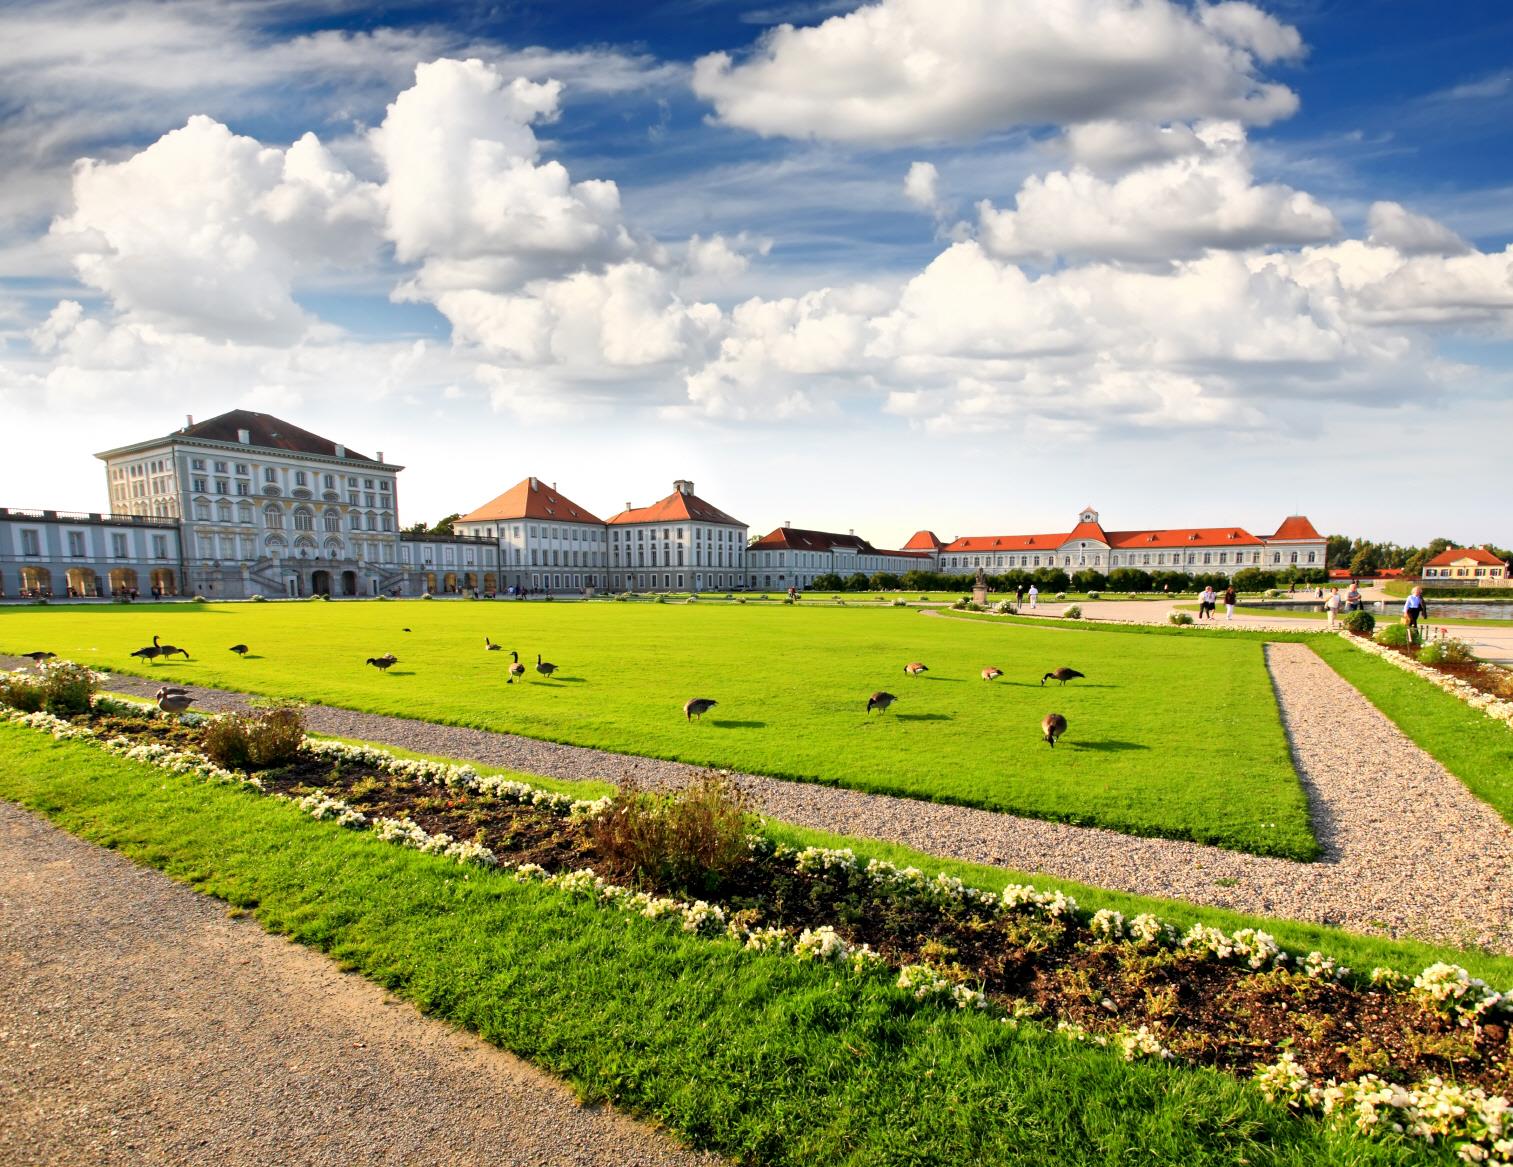 님펜부르크 궁전  Schloss Nymphenburg